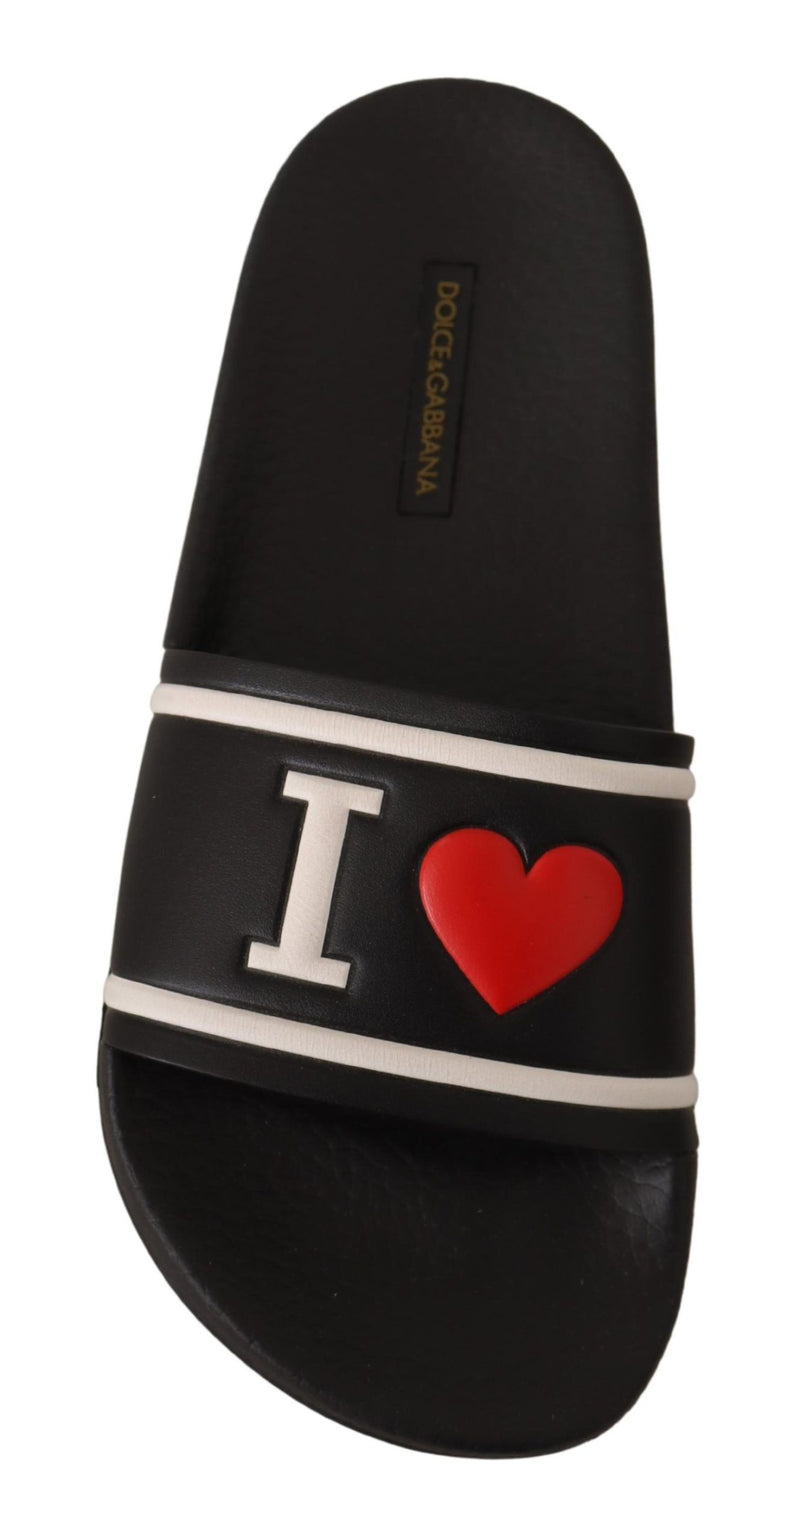 Dolce & Gabbana Elegant Black LeatWomen's Slide Sandals for Women's Her